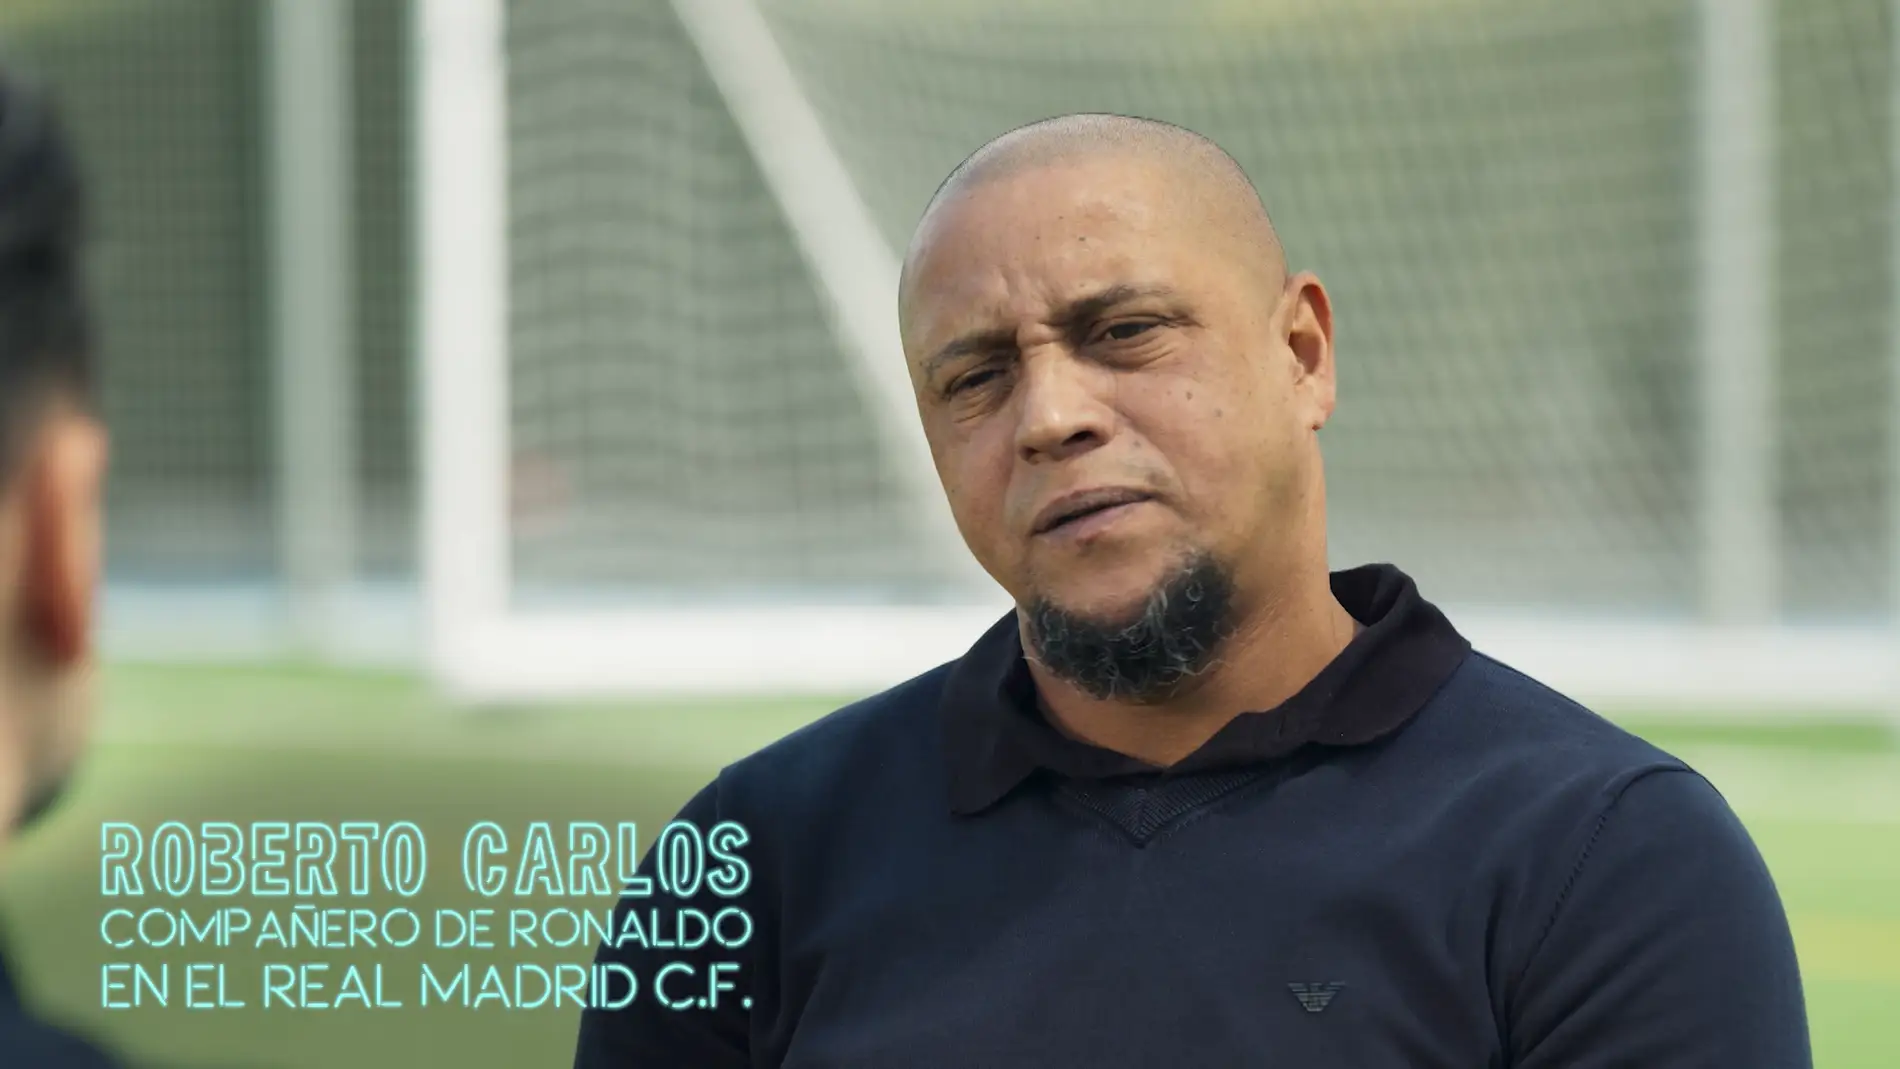 Roberto Carlos, sobre la supuesta vasectomía de Ronaldo: “No me creo que se hiciera un nudo”